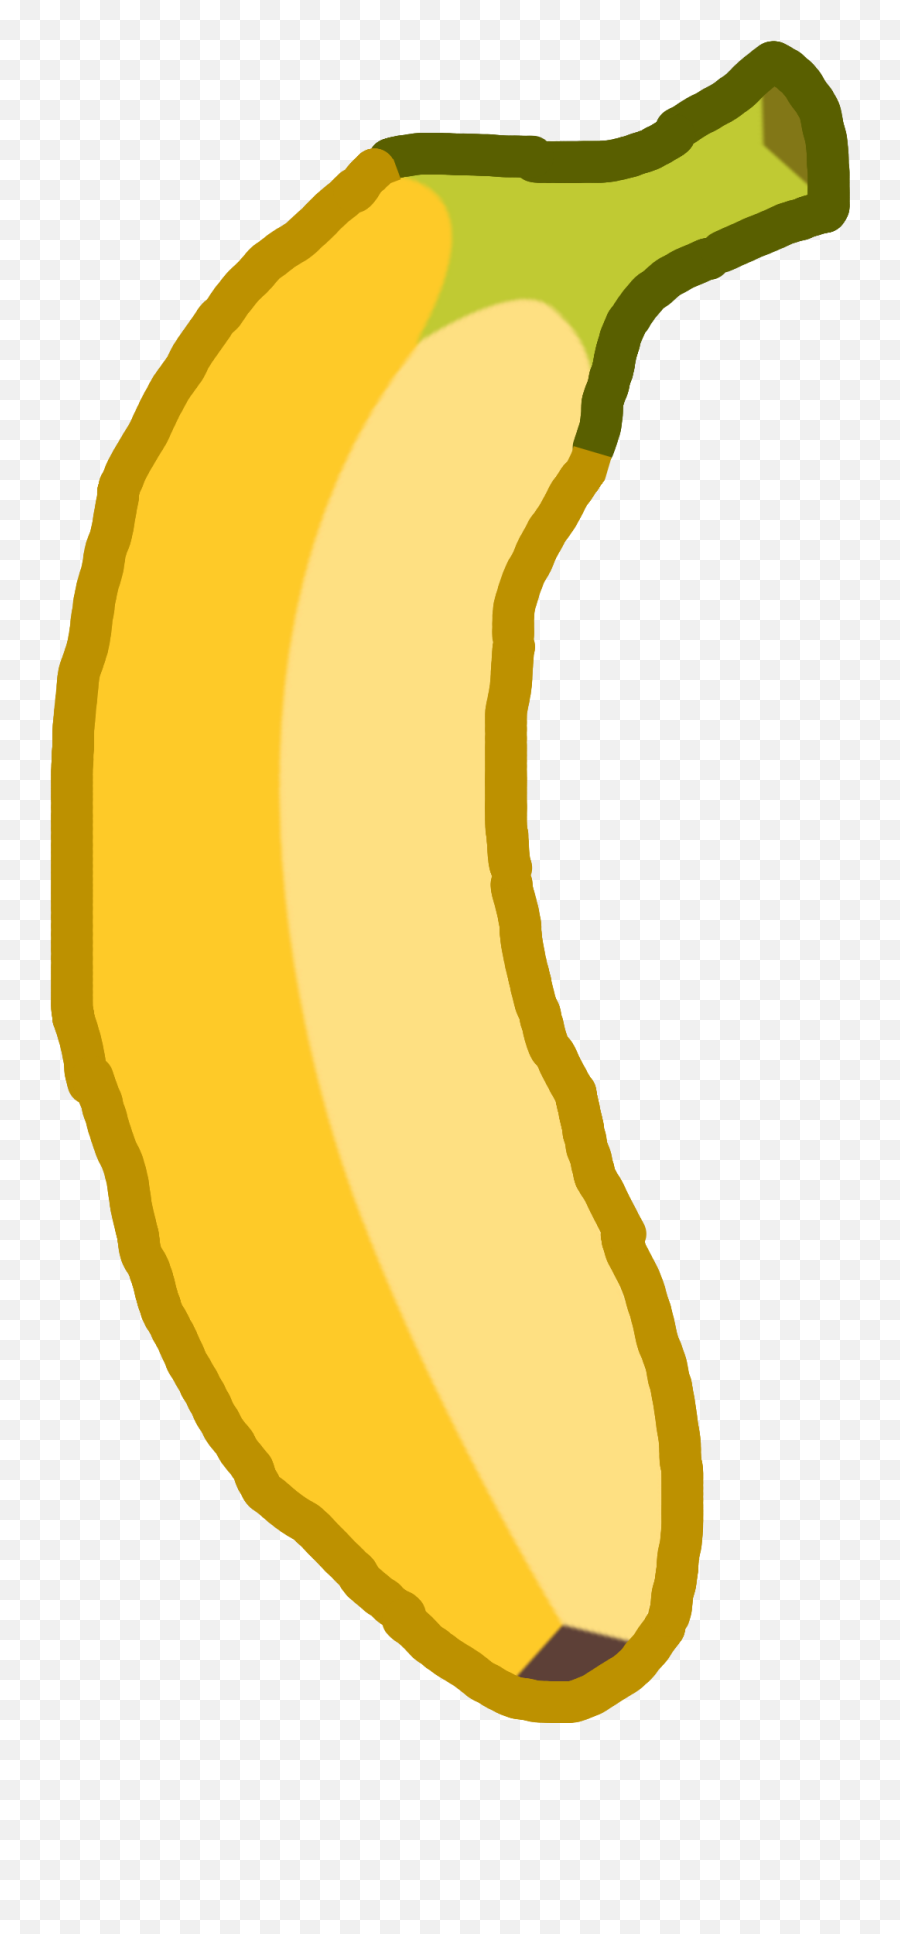 The Most Edited Bananas Picsart - Ripe Banana Emoji,Banana Emoji